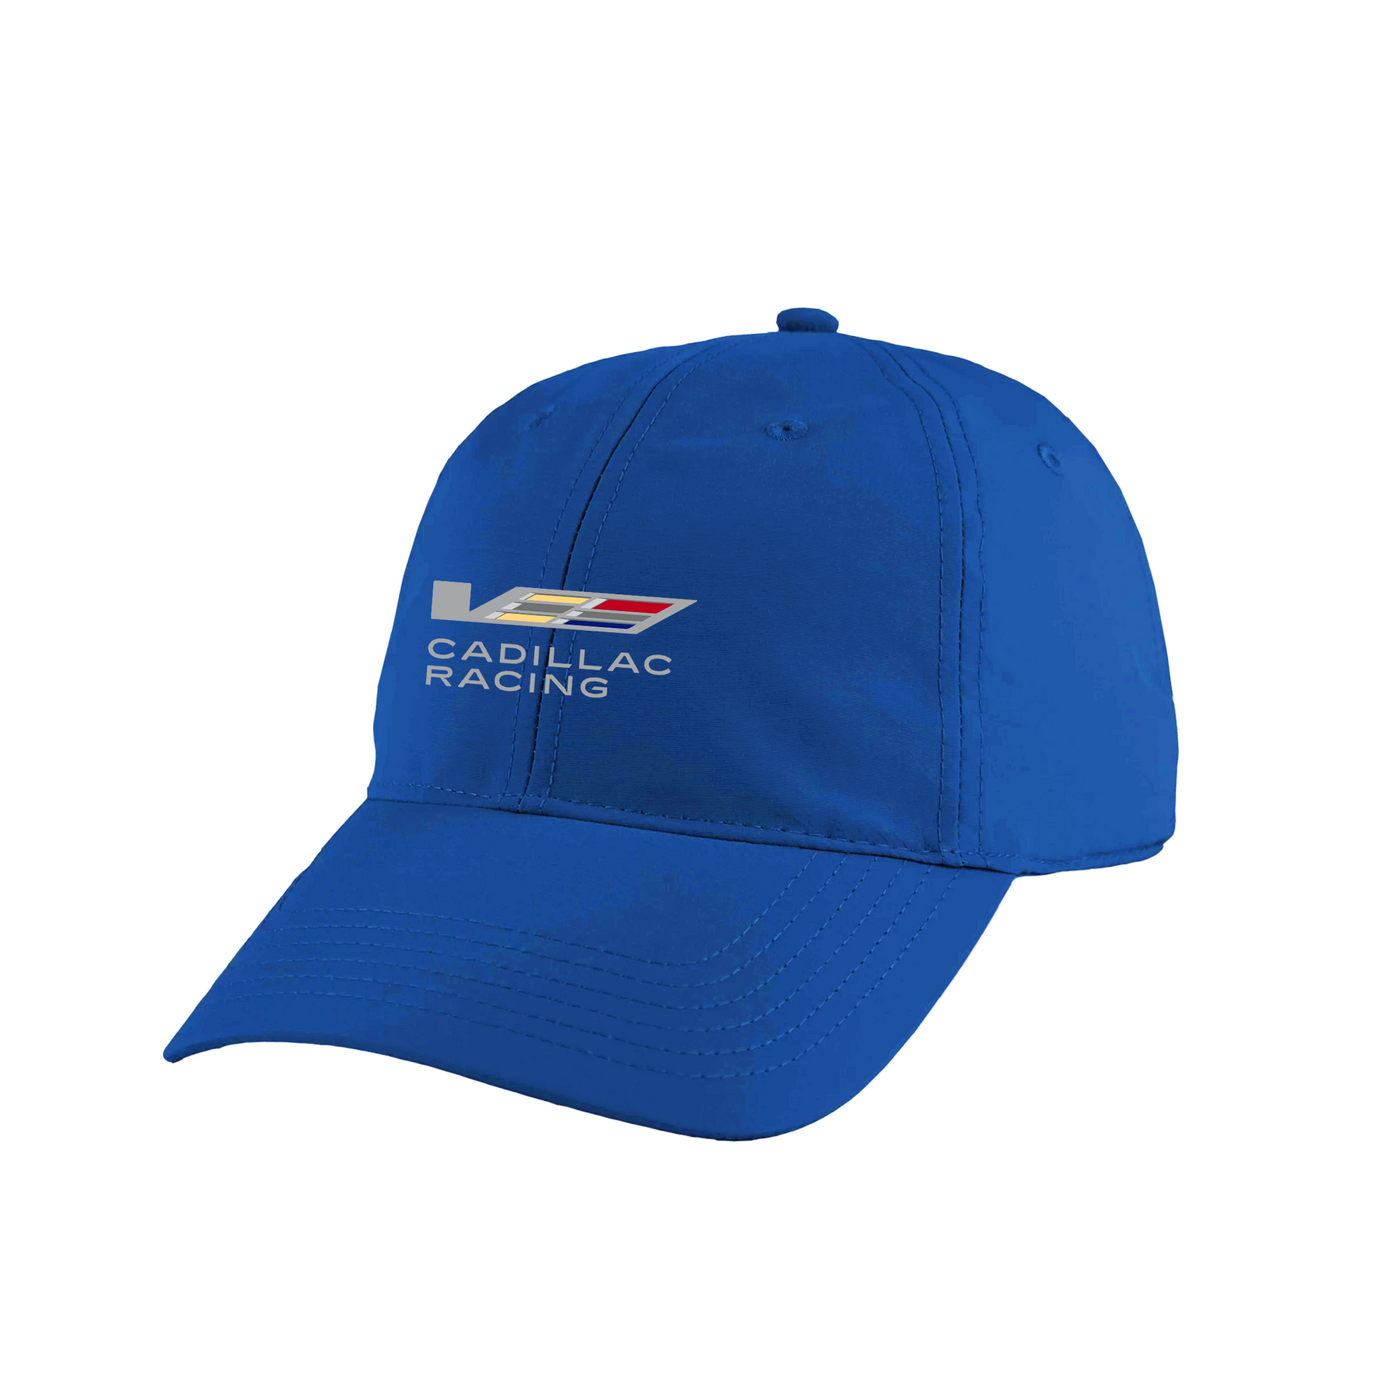 Cadillac Racing Junior Crest Cap